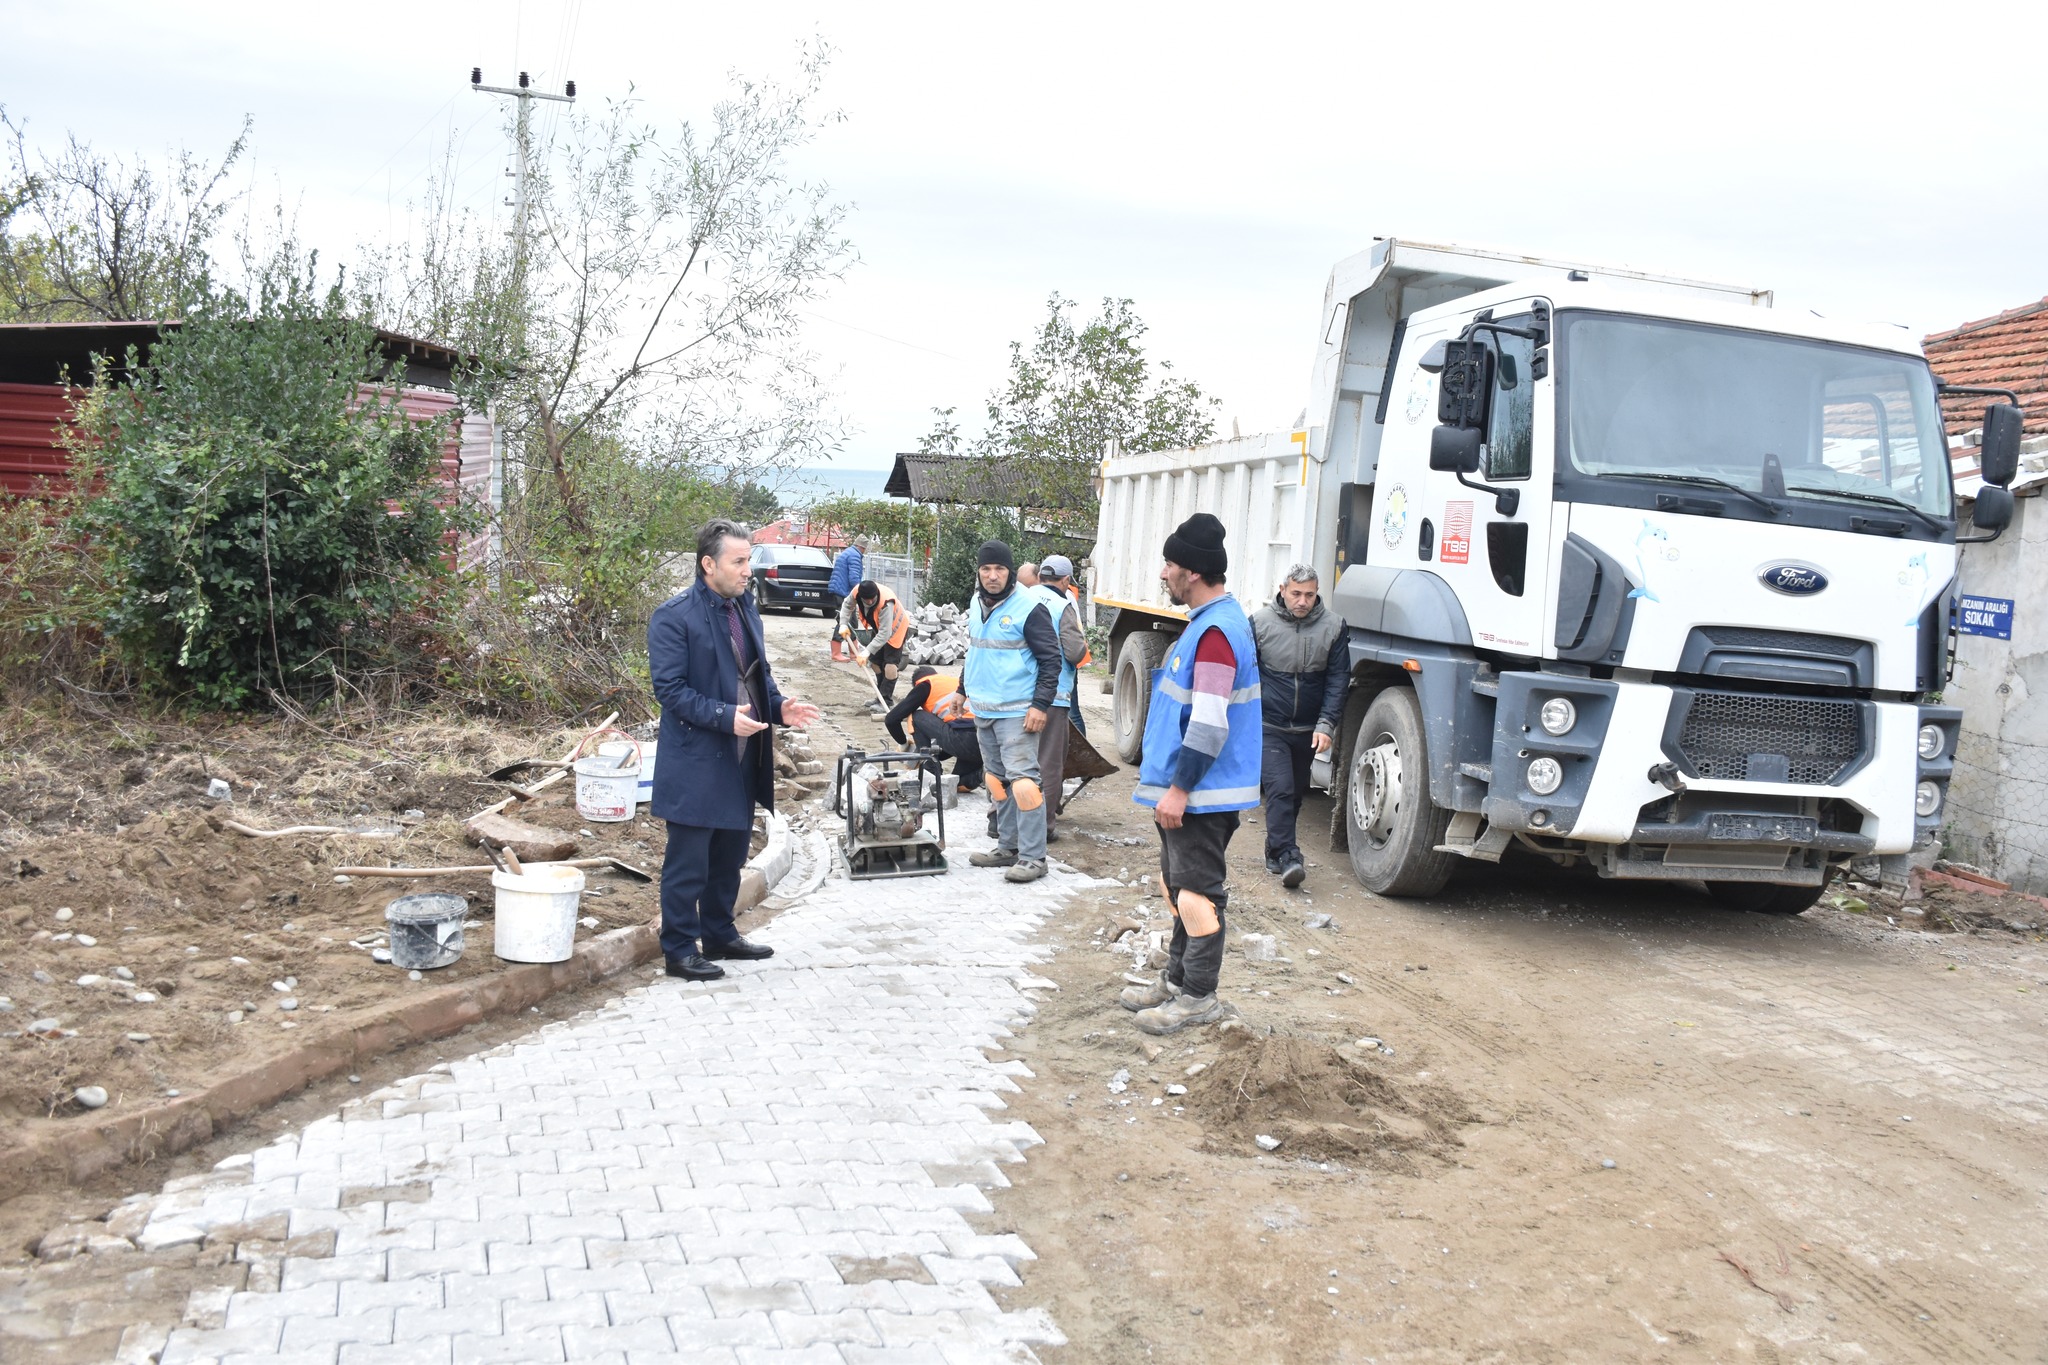 İlçemiz Kozköy Mahallemizde sürdürülen doğalgaz alt yapı çalışmalarının ardından, Fen işleri Müdürlüğümüze bağlı ekipler tarafından bozulan yolların bakım ve onarım işlemleri devam ediyor.